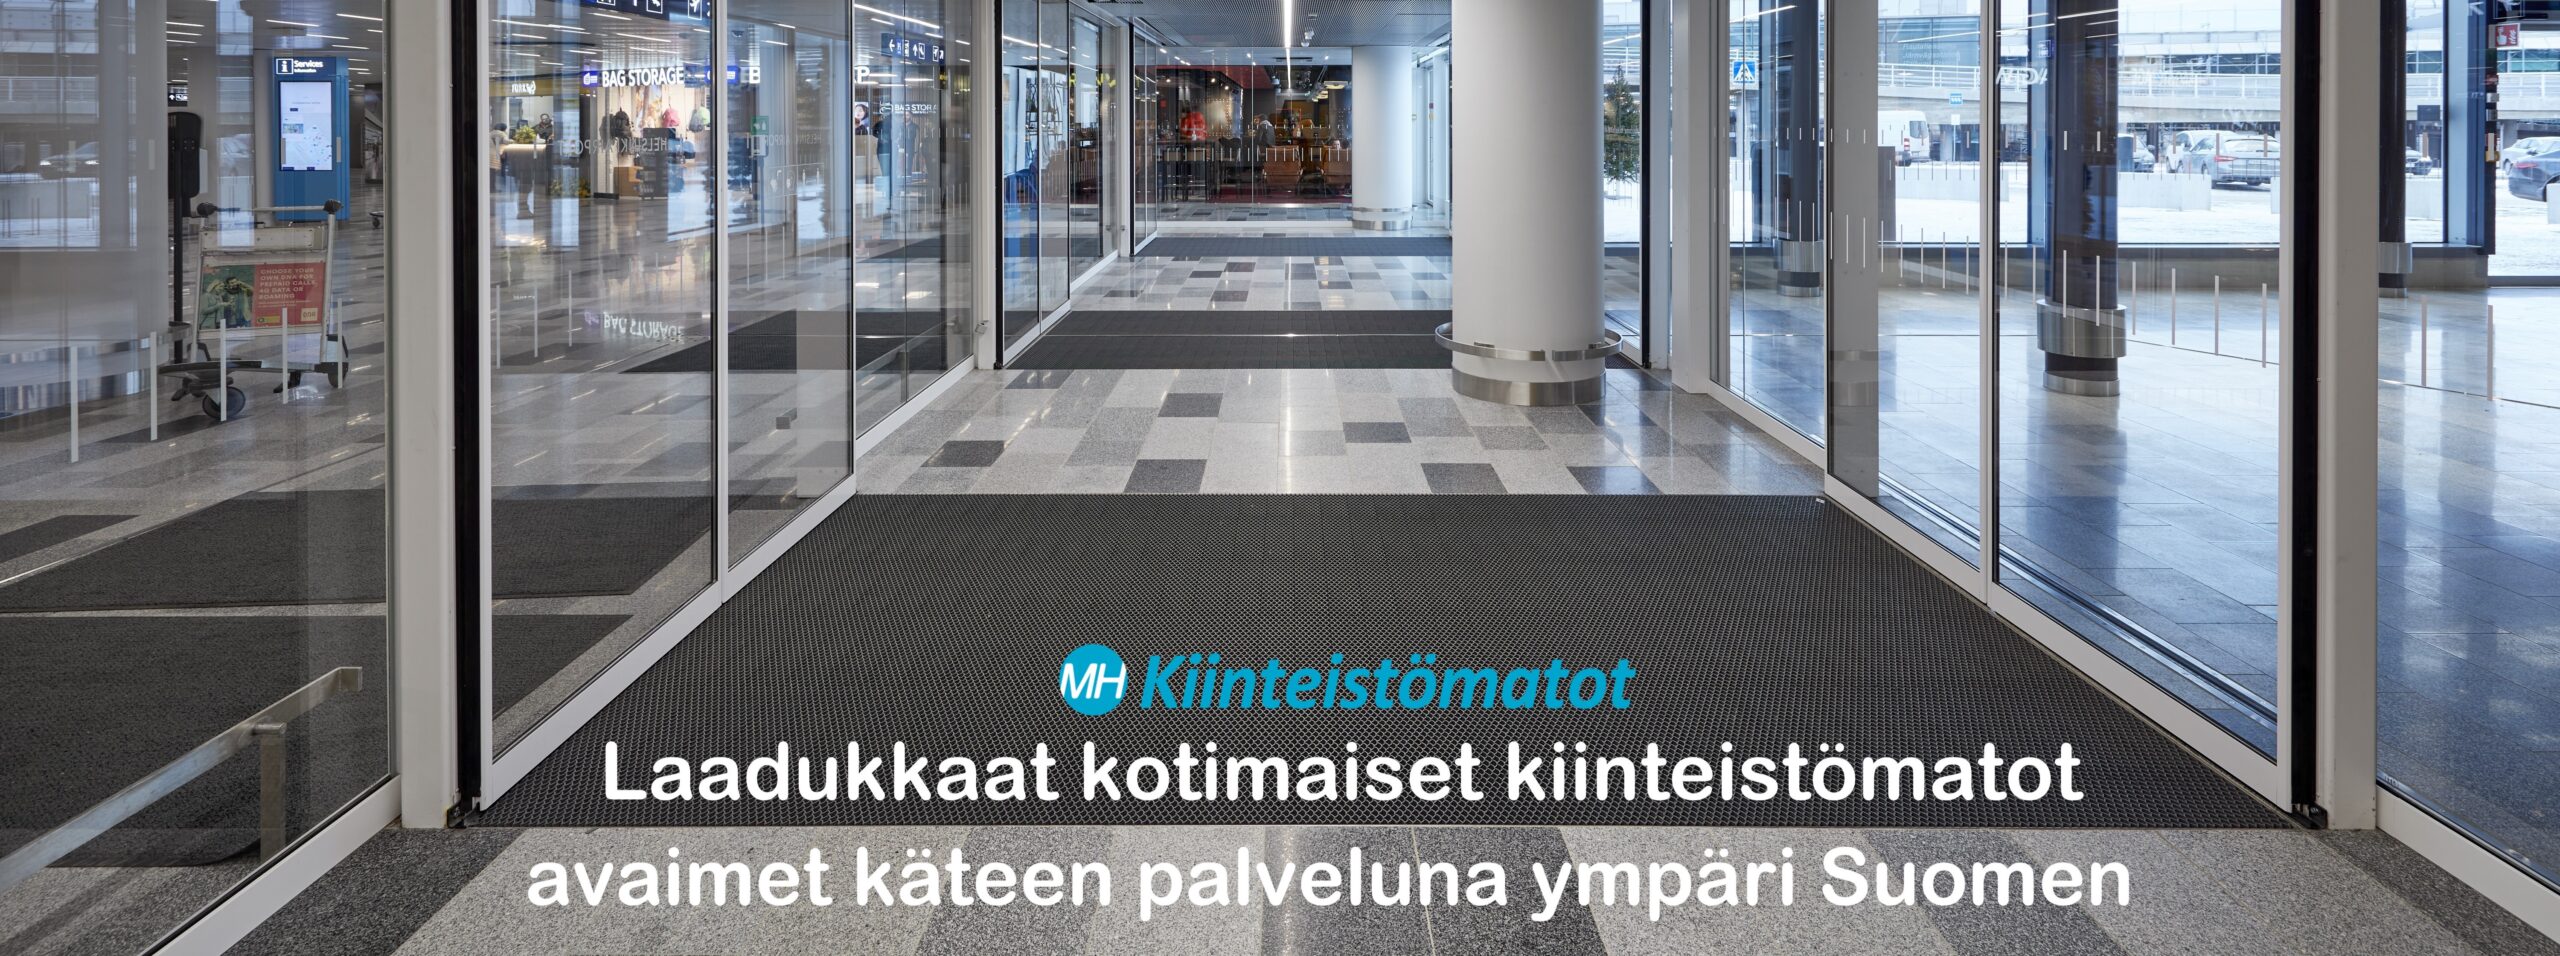 Jaguar tuulikaappimatot asennettuna uudistuneella Helsiki Vantaan lentoasemalla